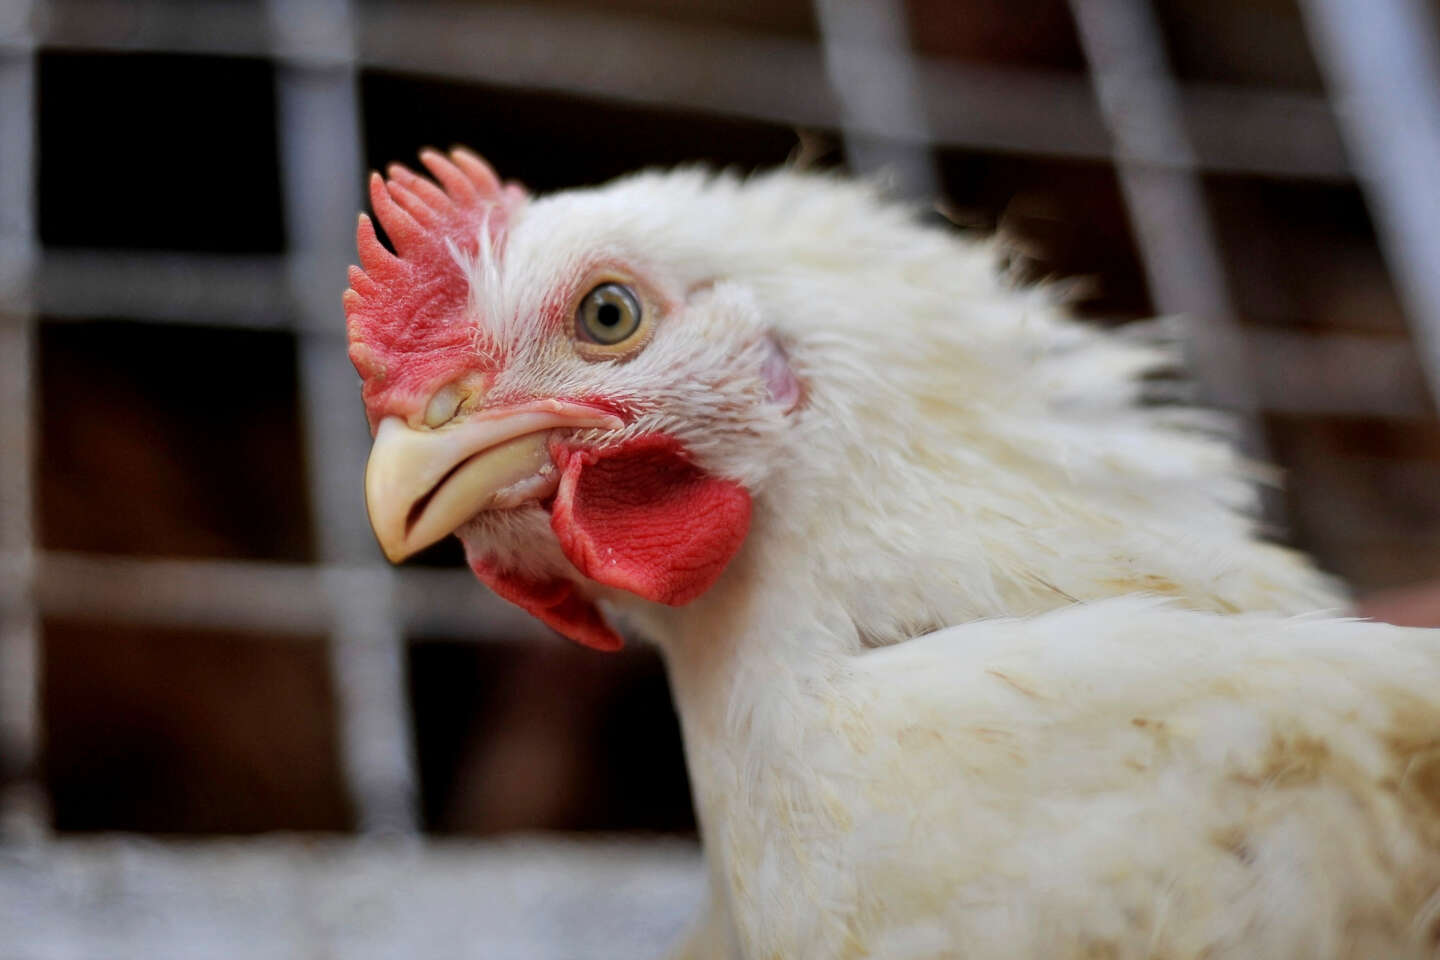 Le autorità sanitarie sconsigliano il consumo di uova provenienti da pollai locali situati nell’Ile de France